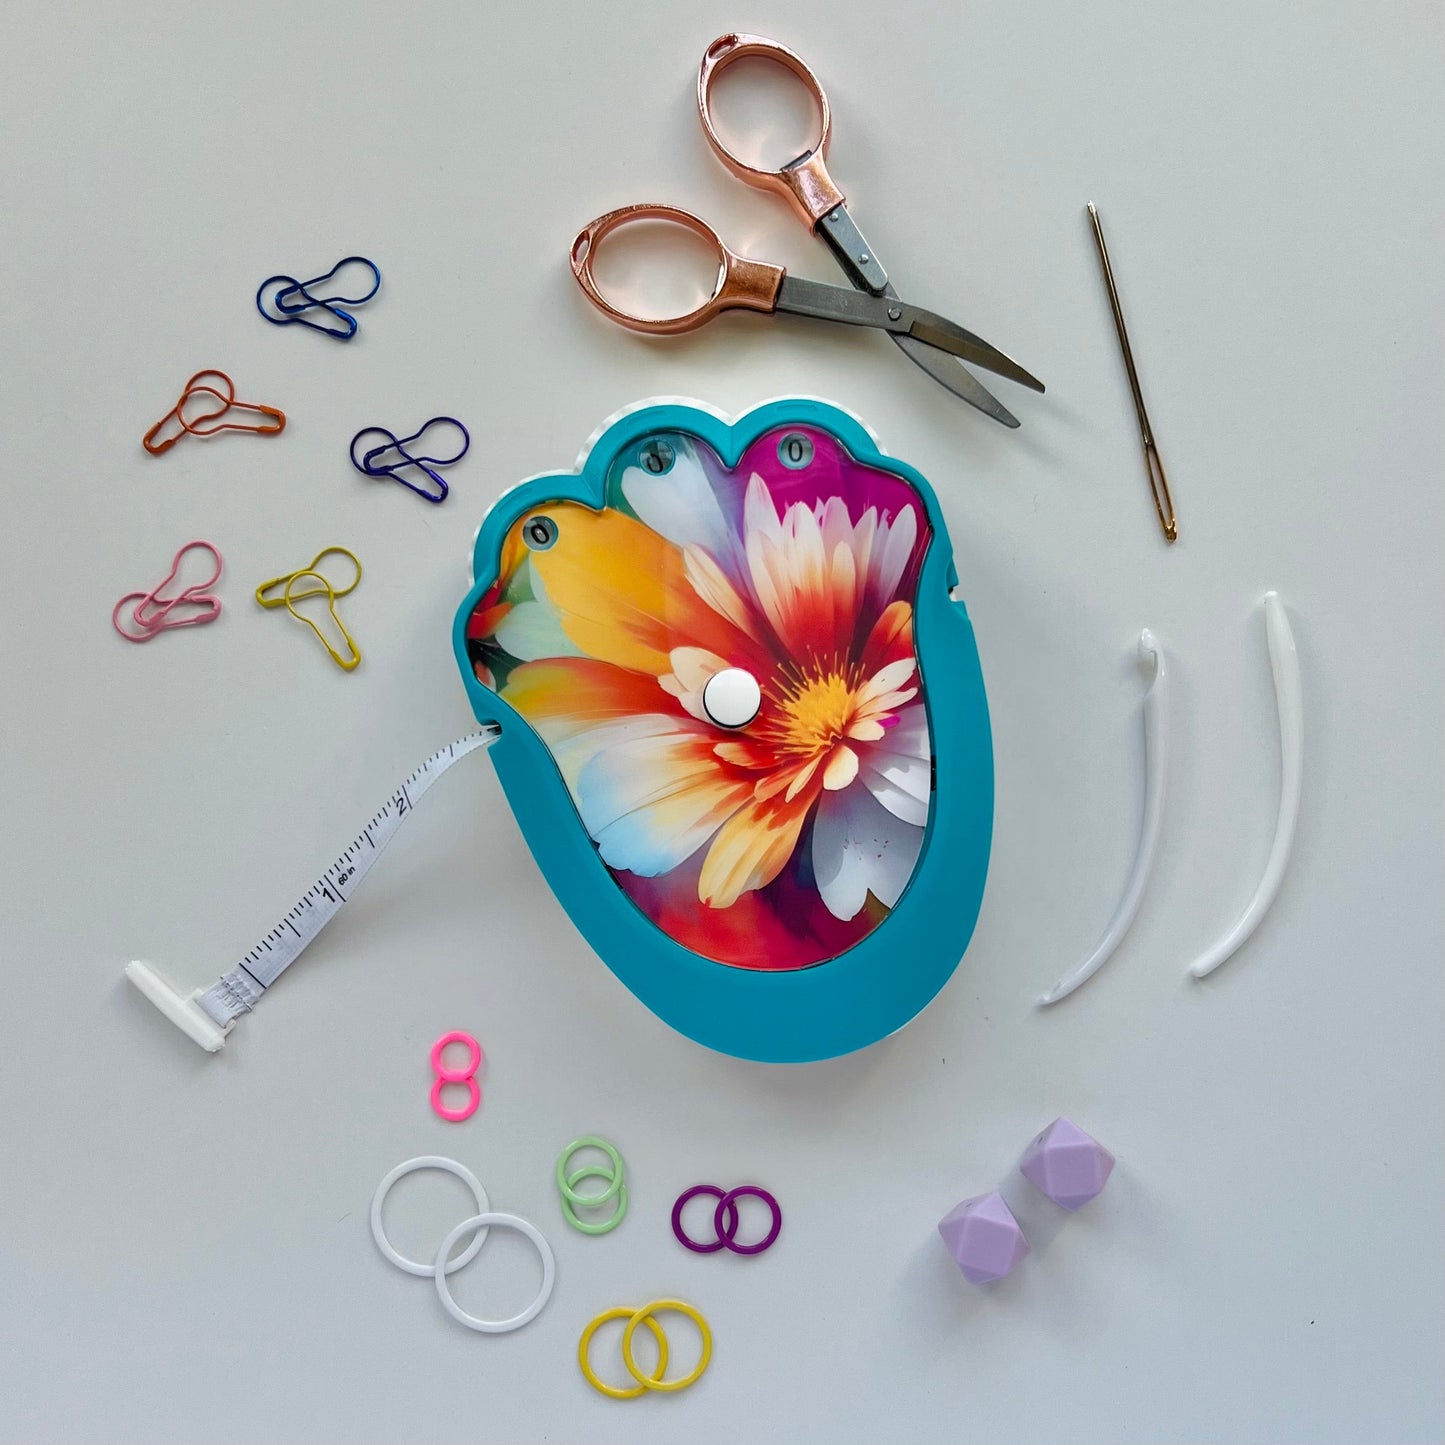 The Knit & Crochet Kit - Knitting & Crochet Tool Kit - Spring Fling - Assorted Colors